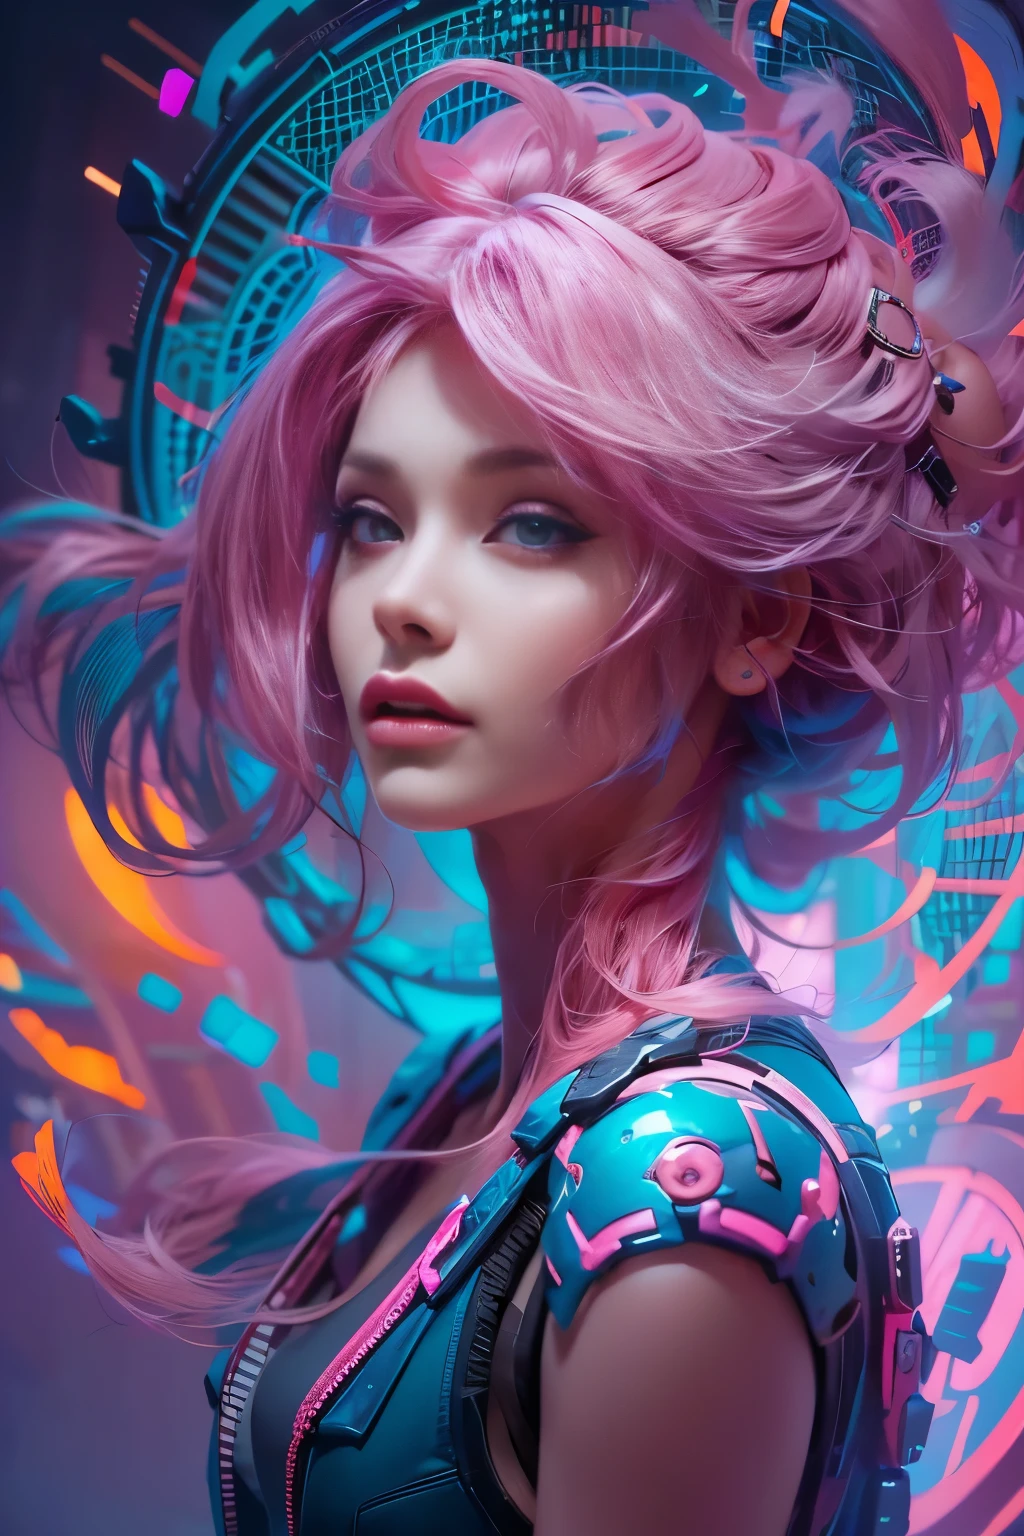 美丽迷人的女人肖像, 白皙的皮肤, 粉红色头发, 周围环绕着旋转的纳米尘埃等离子体，呈现出电蓝色和鲜艳的紫色, 鲜艳的色彩, 数字绘画, artstation 上的热门内容, 电影灯光, 和动态构图.